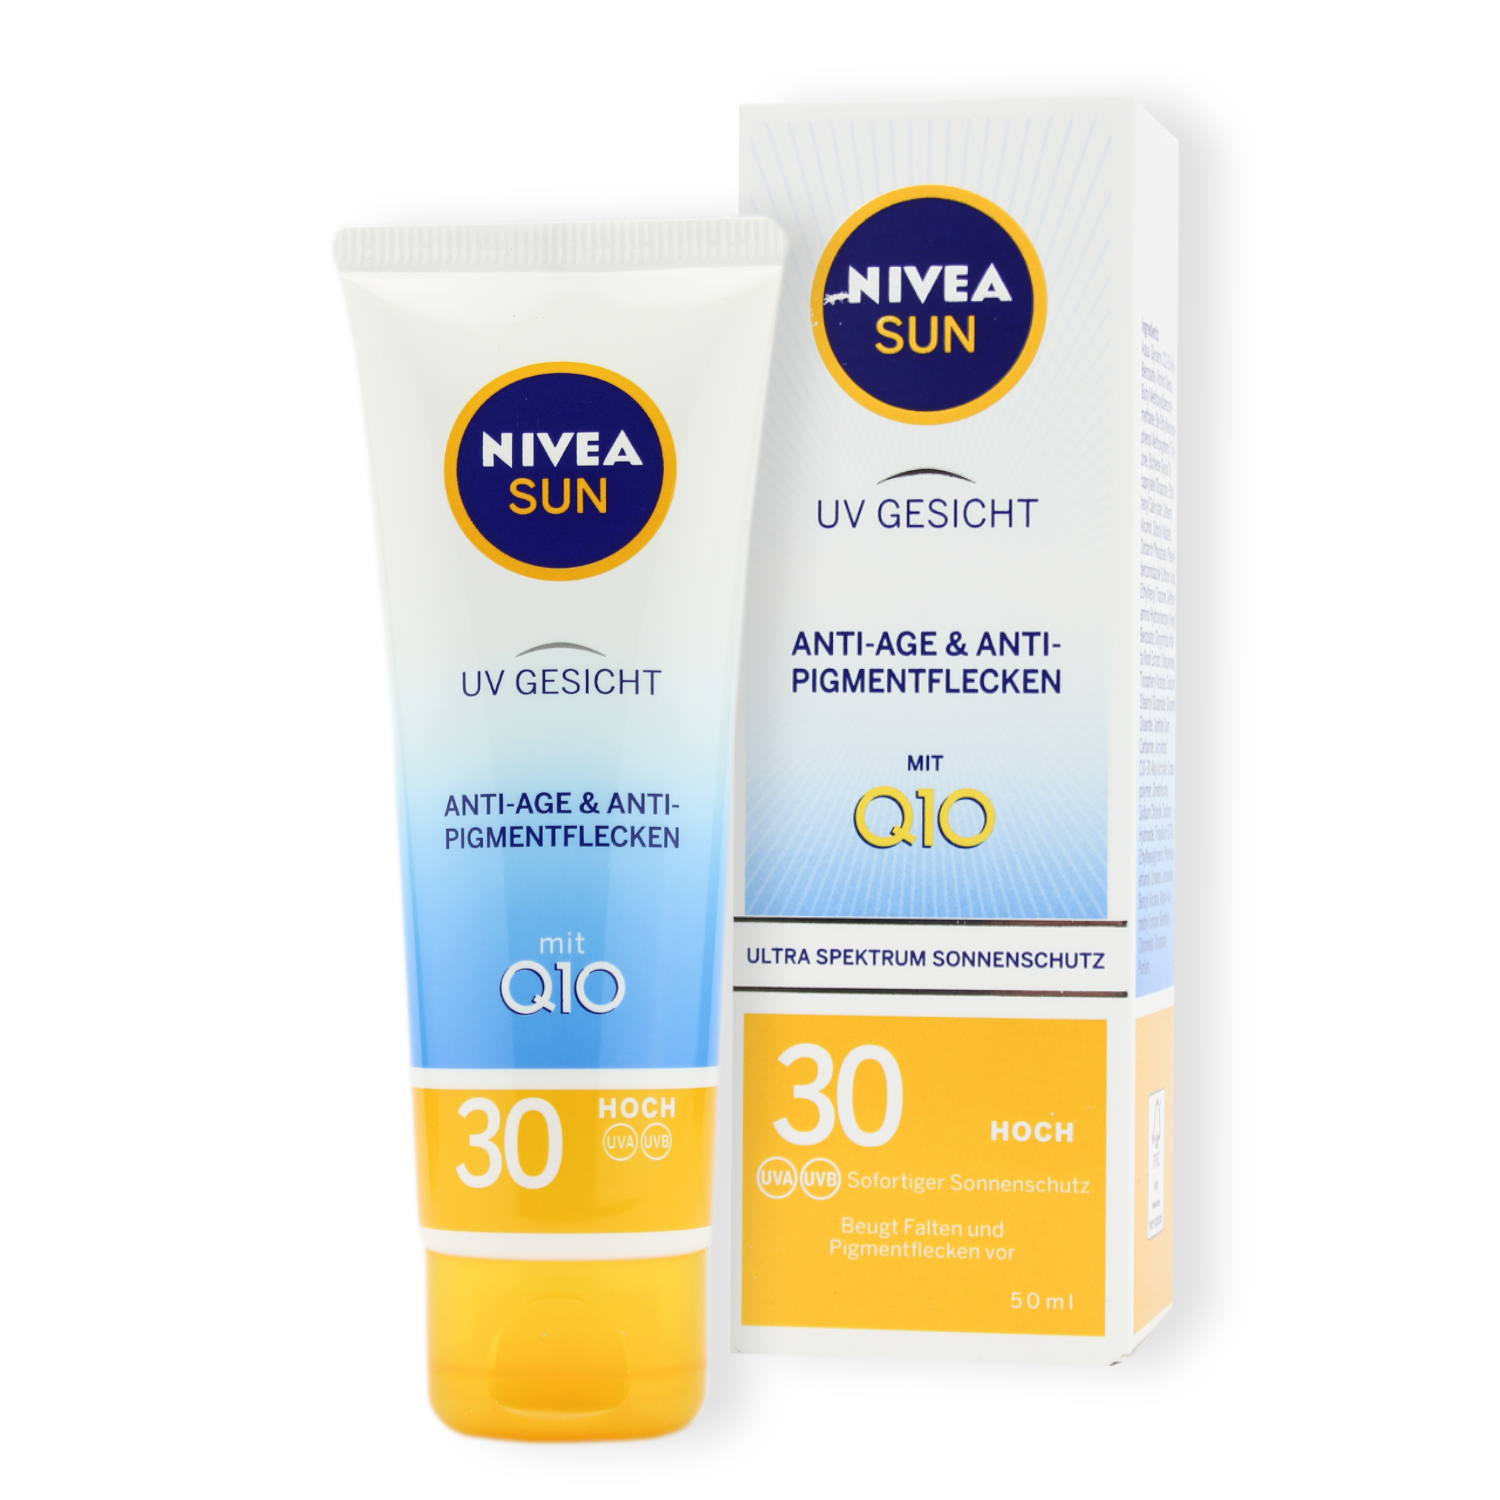 Nivea Sun UV Gesicht Q10 Anti-Age Sonnenschutz mit LSF30 50ml